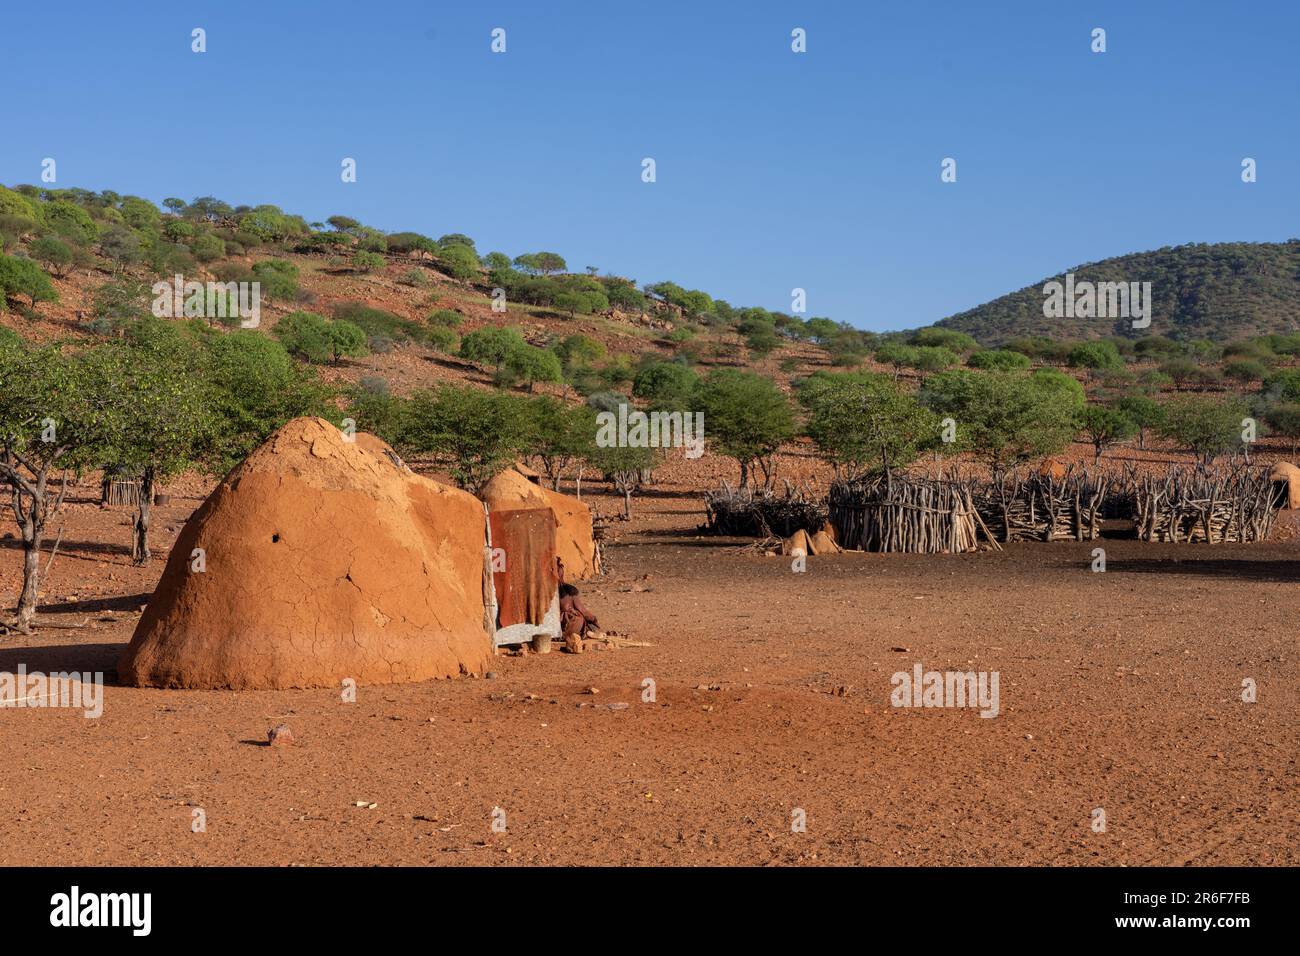 Dorf des Himba-Stammes, Kaokoveld, Namibia, Afrika. Der rohe Holzschuppen wird zur Lagerung von Getreide oder Vieh verwendet. Die Himba (Singular: OmuHimba, plura Stockfoto